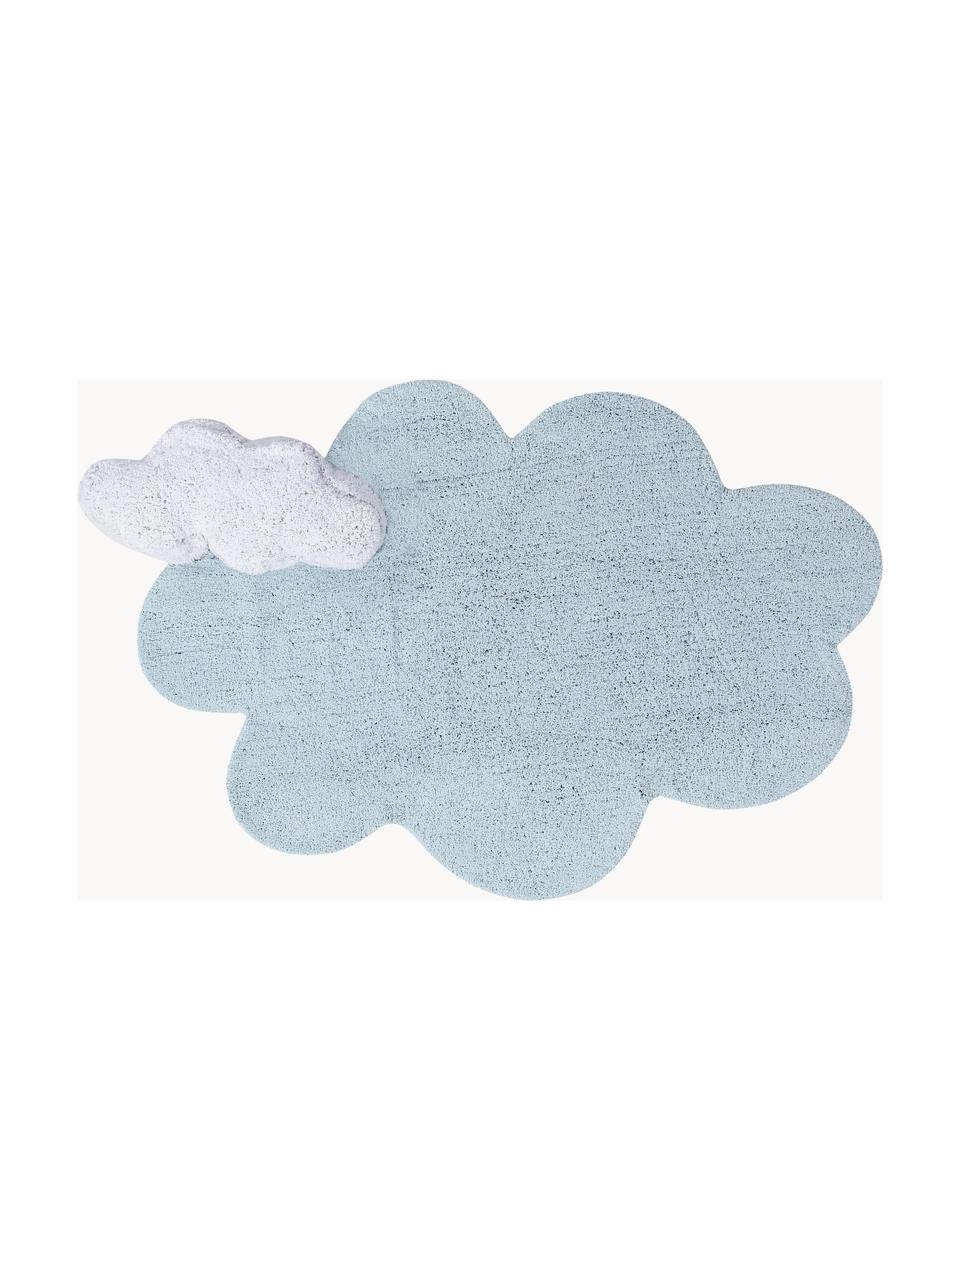 Tappeto per bambini fatto a mano con motivo in rilievo Dream, lavabile, Retro: 100% cotone, Azzurro, bianco, Larg. 110 x Lung. 170 cm (taglia S)